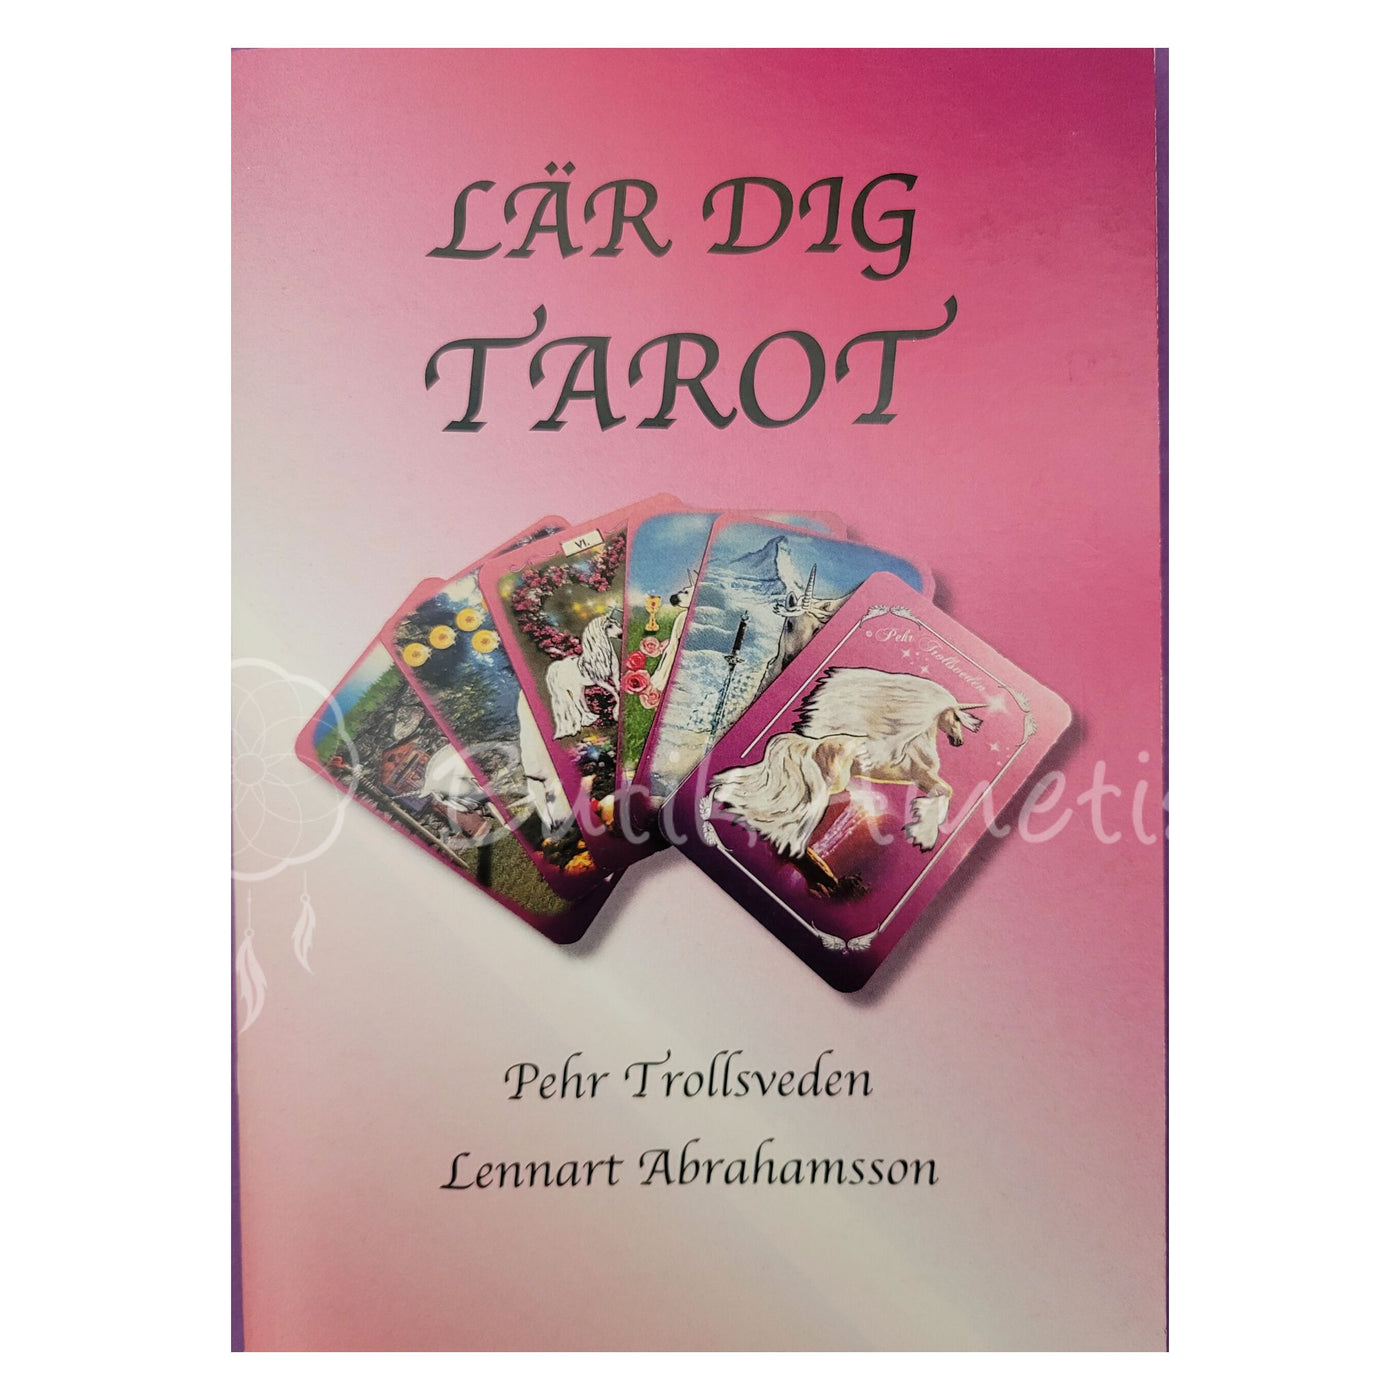 Lär dig tarot - bok av Pehr Trollsveden